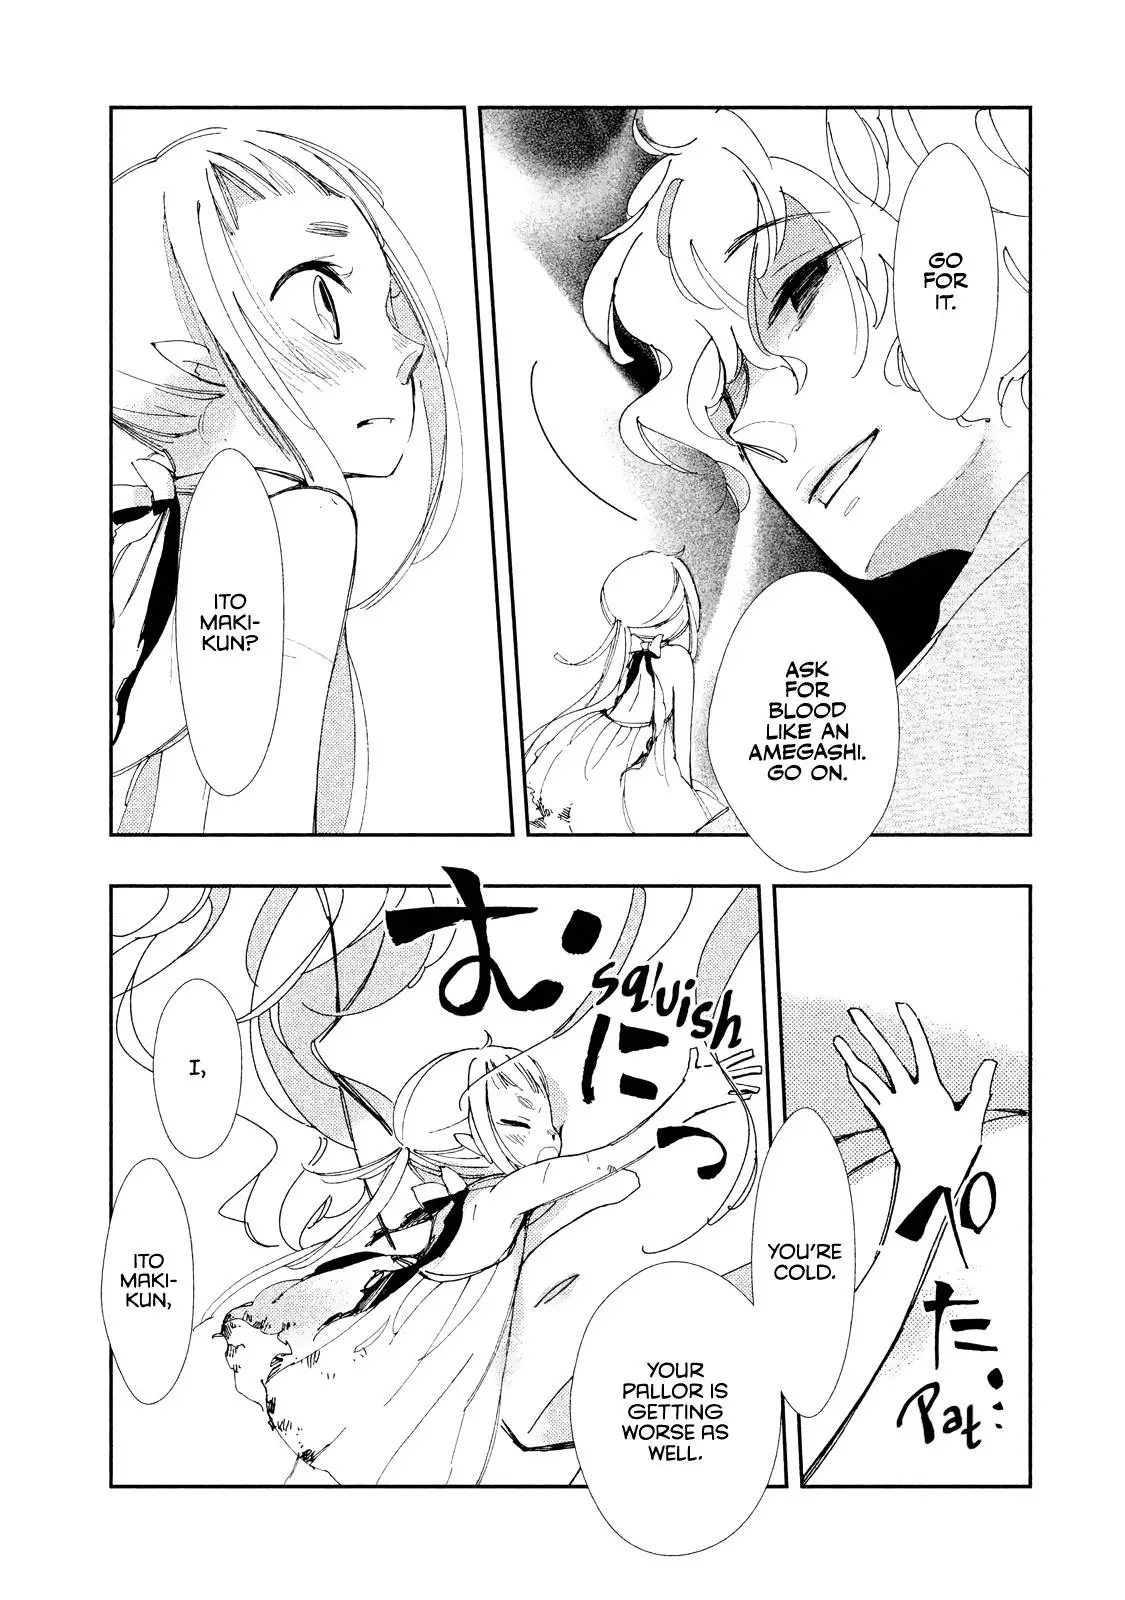 Amegashi - 6 page 39-e83e11e4